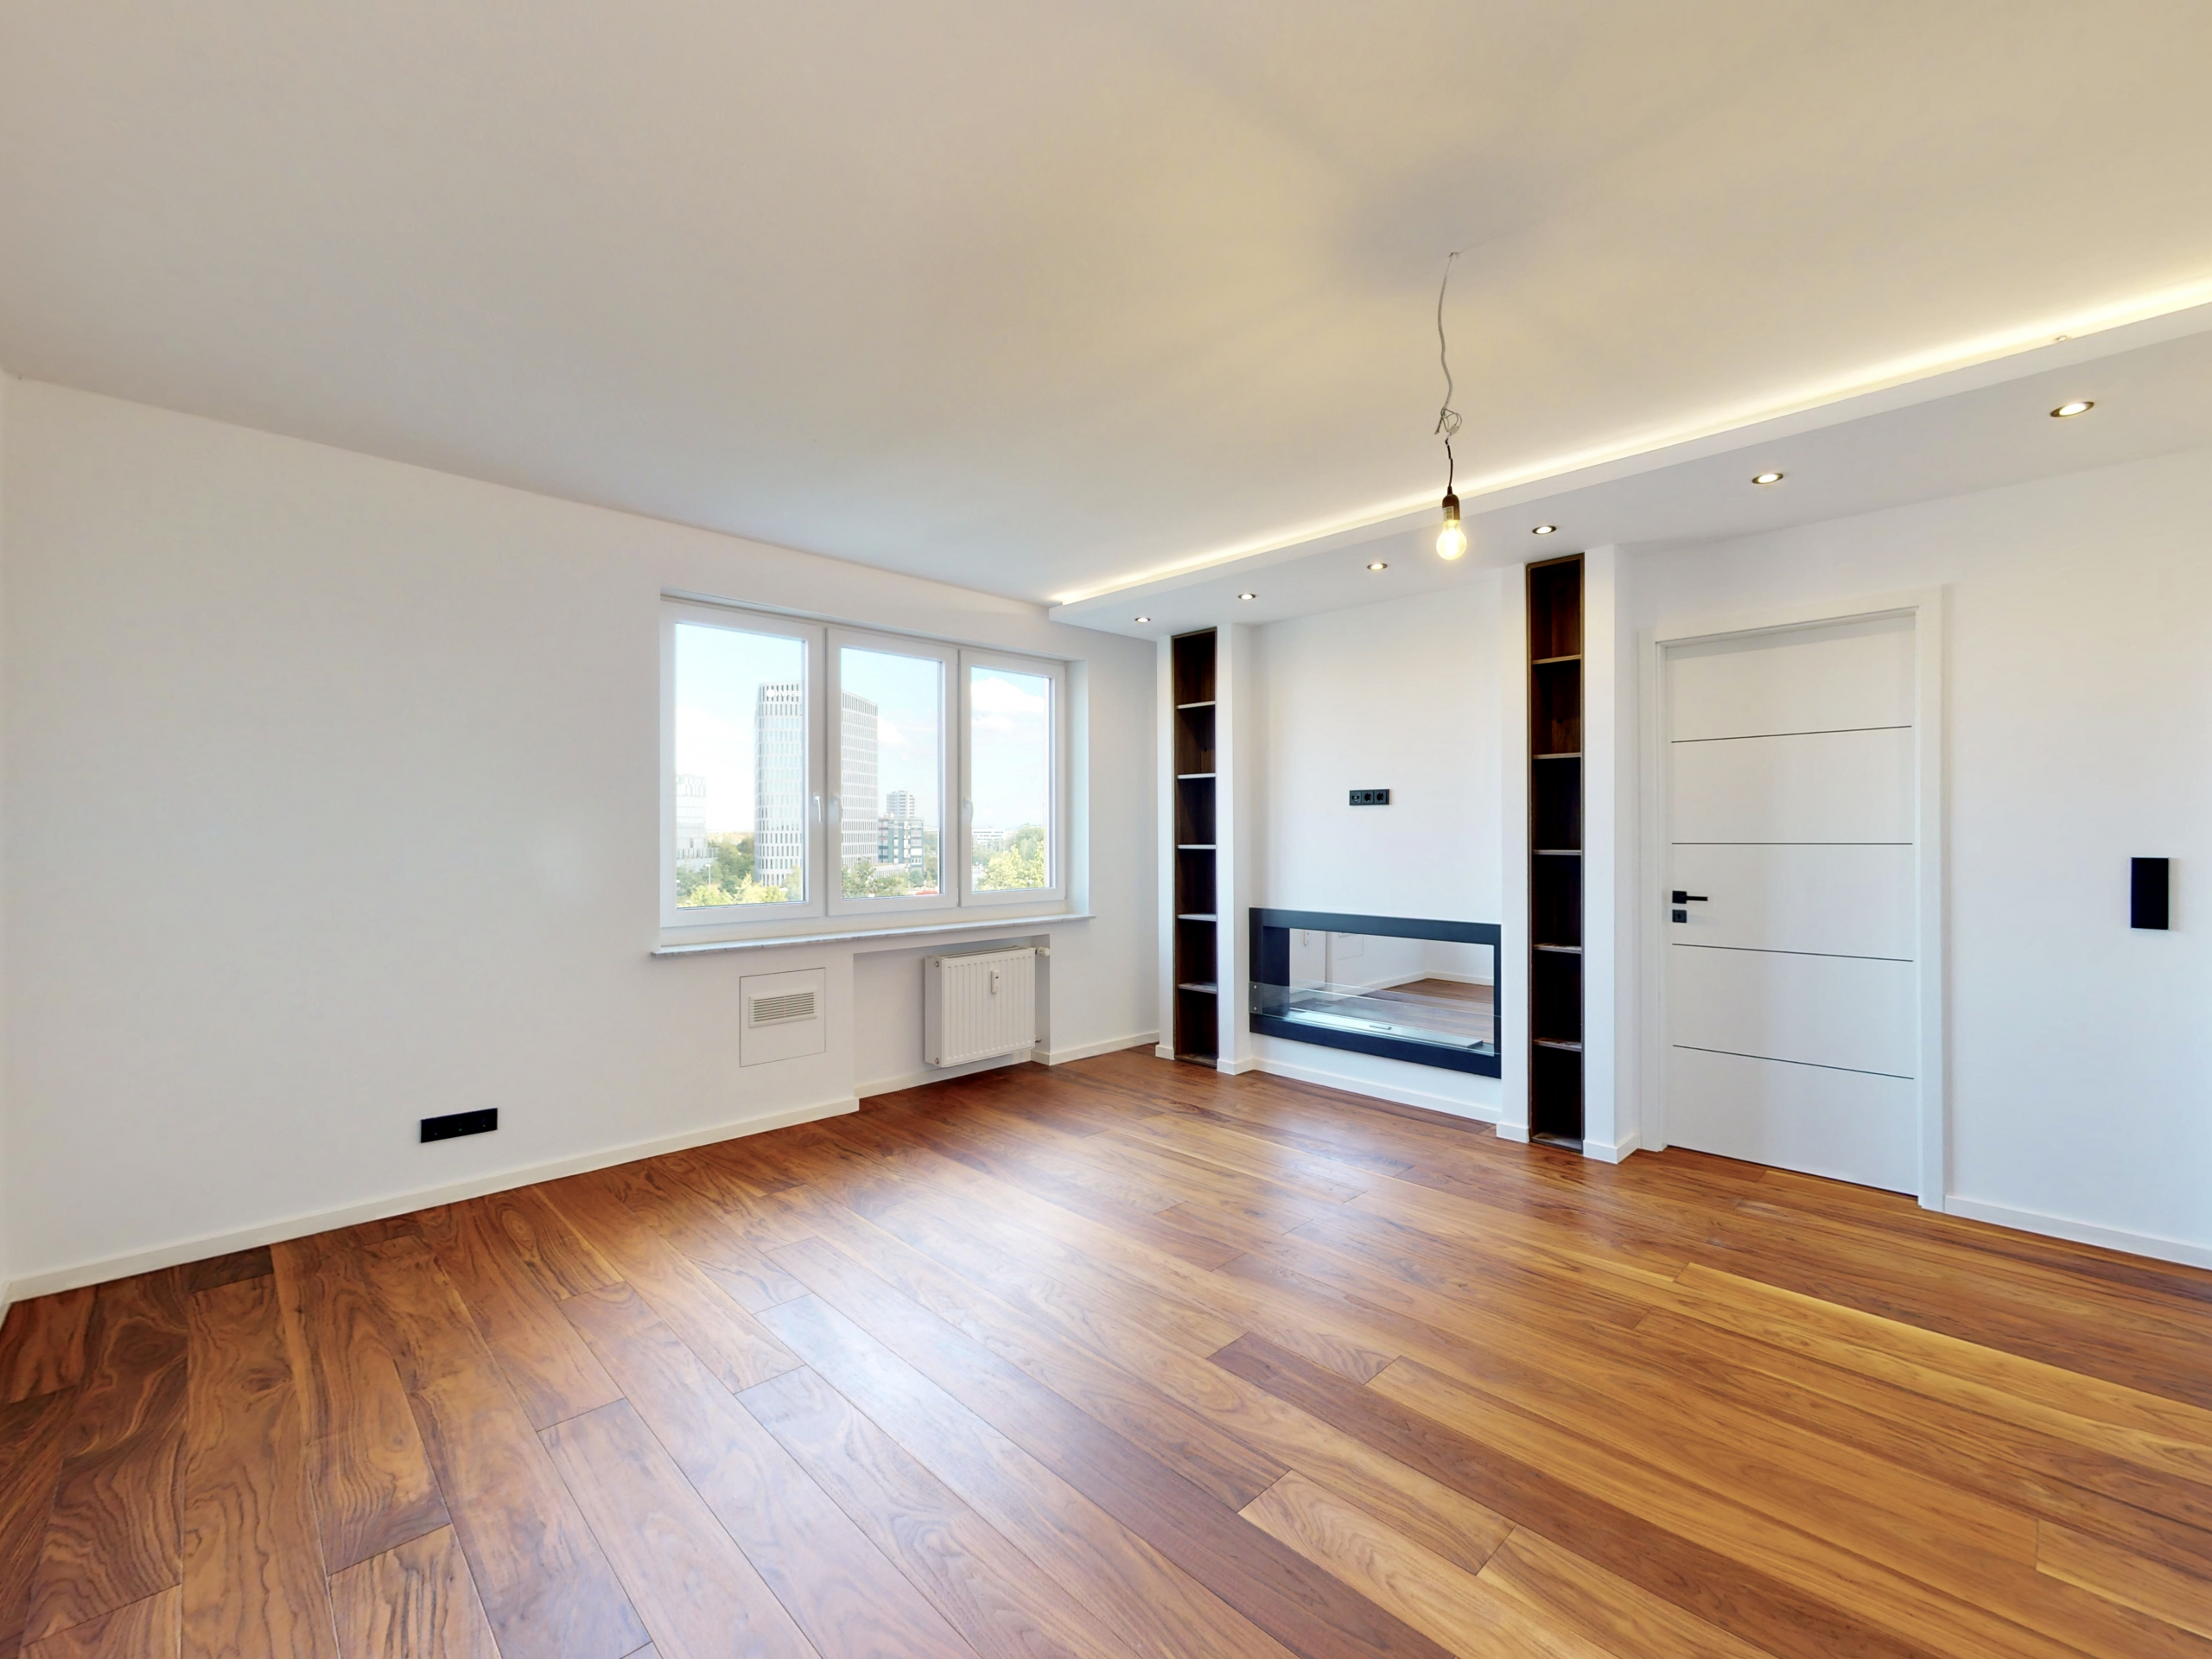 Luxus pur! Voll renovierte 2-Zimmer-Wohnung in Bogenhausen - Wohnbereich